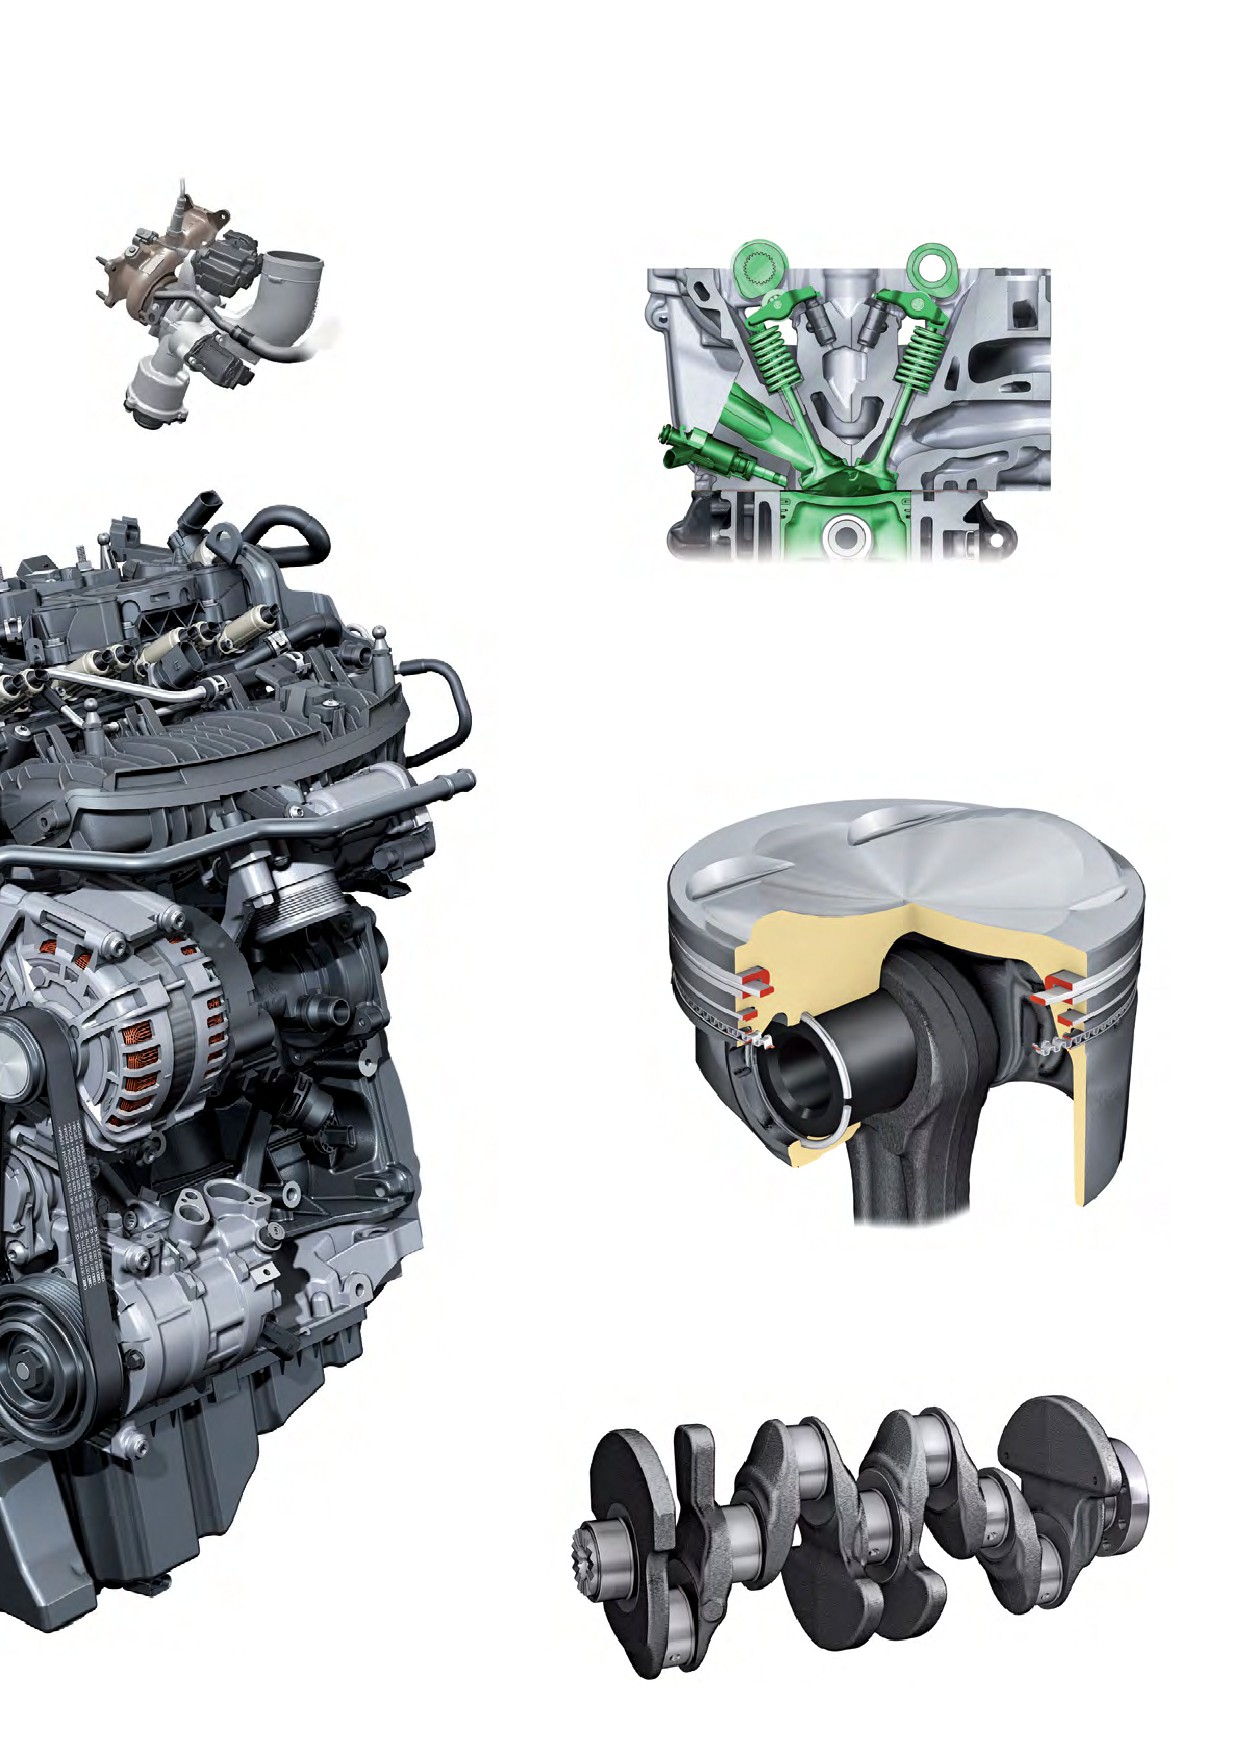 История двигателей в моделях audi a4 — описание и характеристики